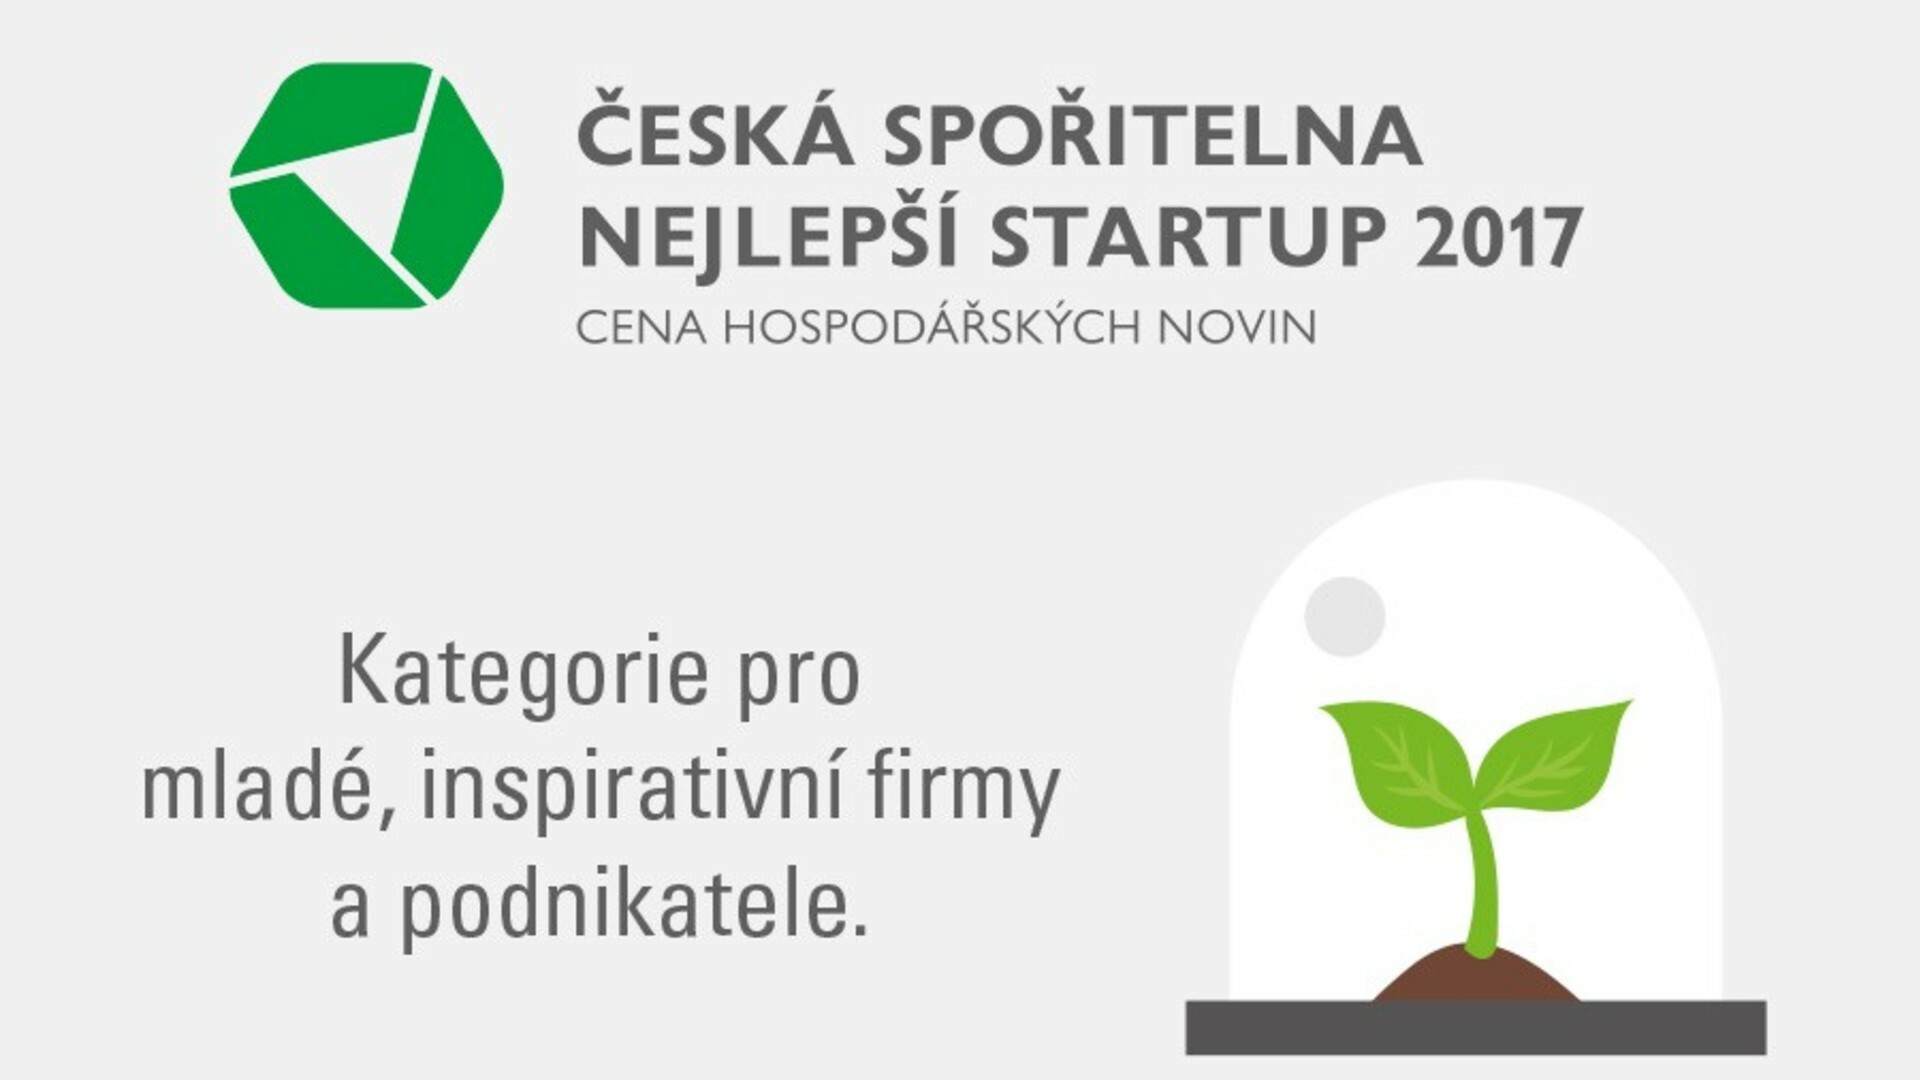 Reservatic was nominated at Česká spořitelna startup of the year 2017